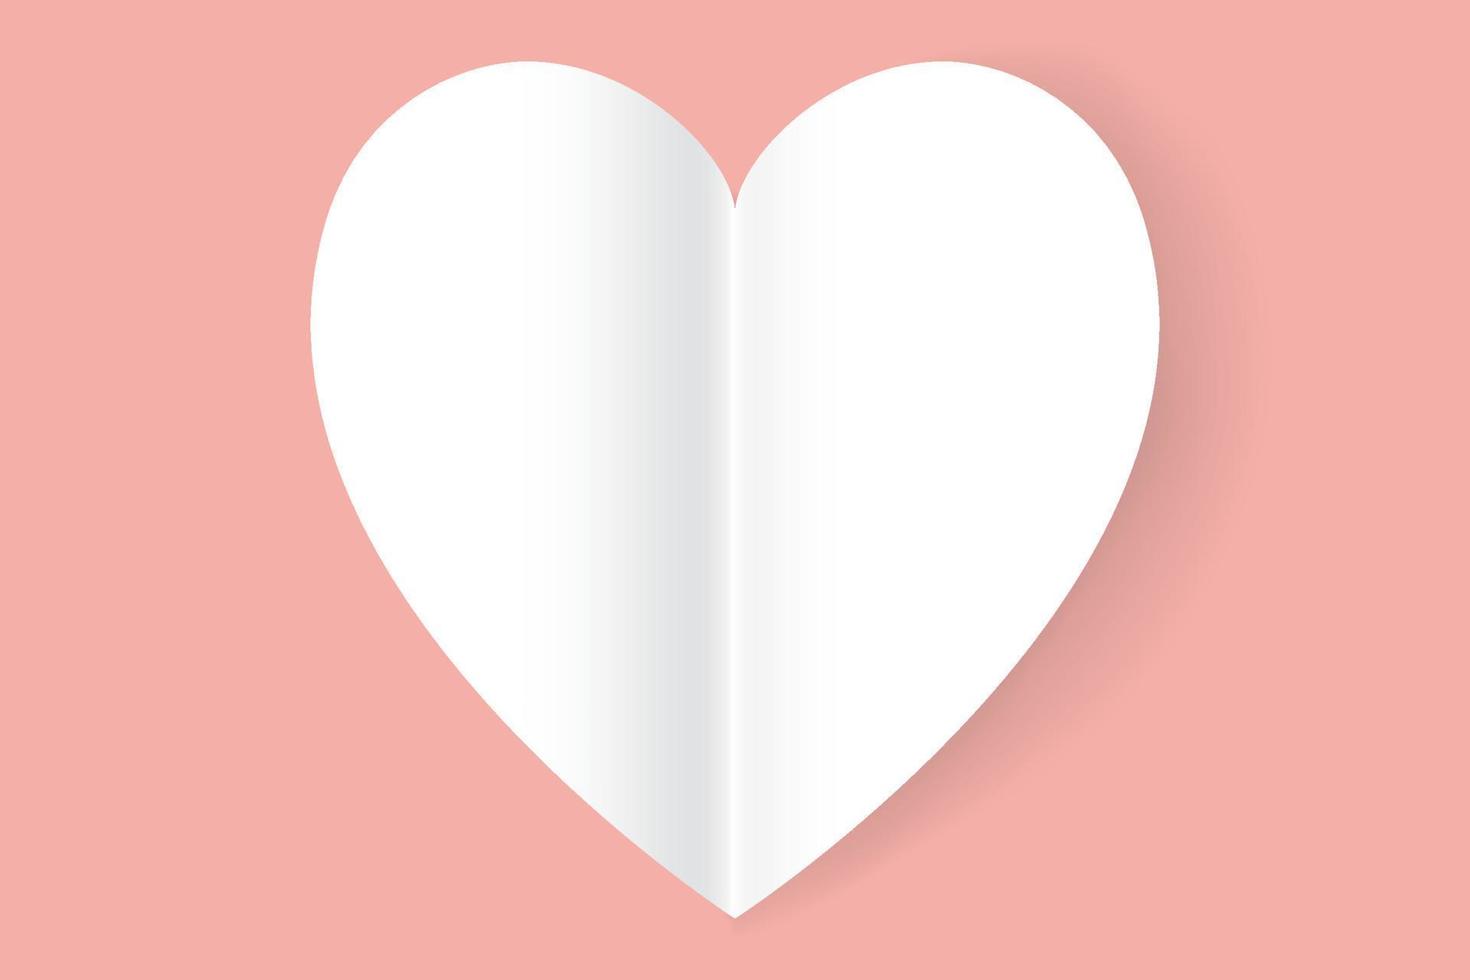 símbolo do coração branco no fundo rosa. ilustração vetorial. vetor